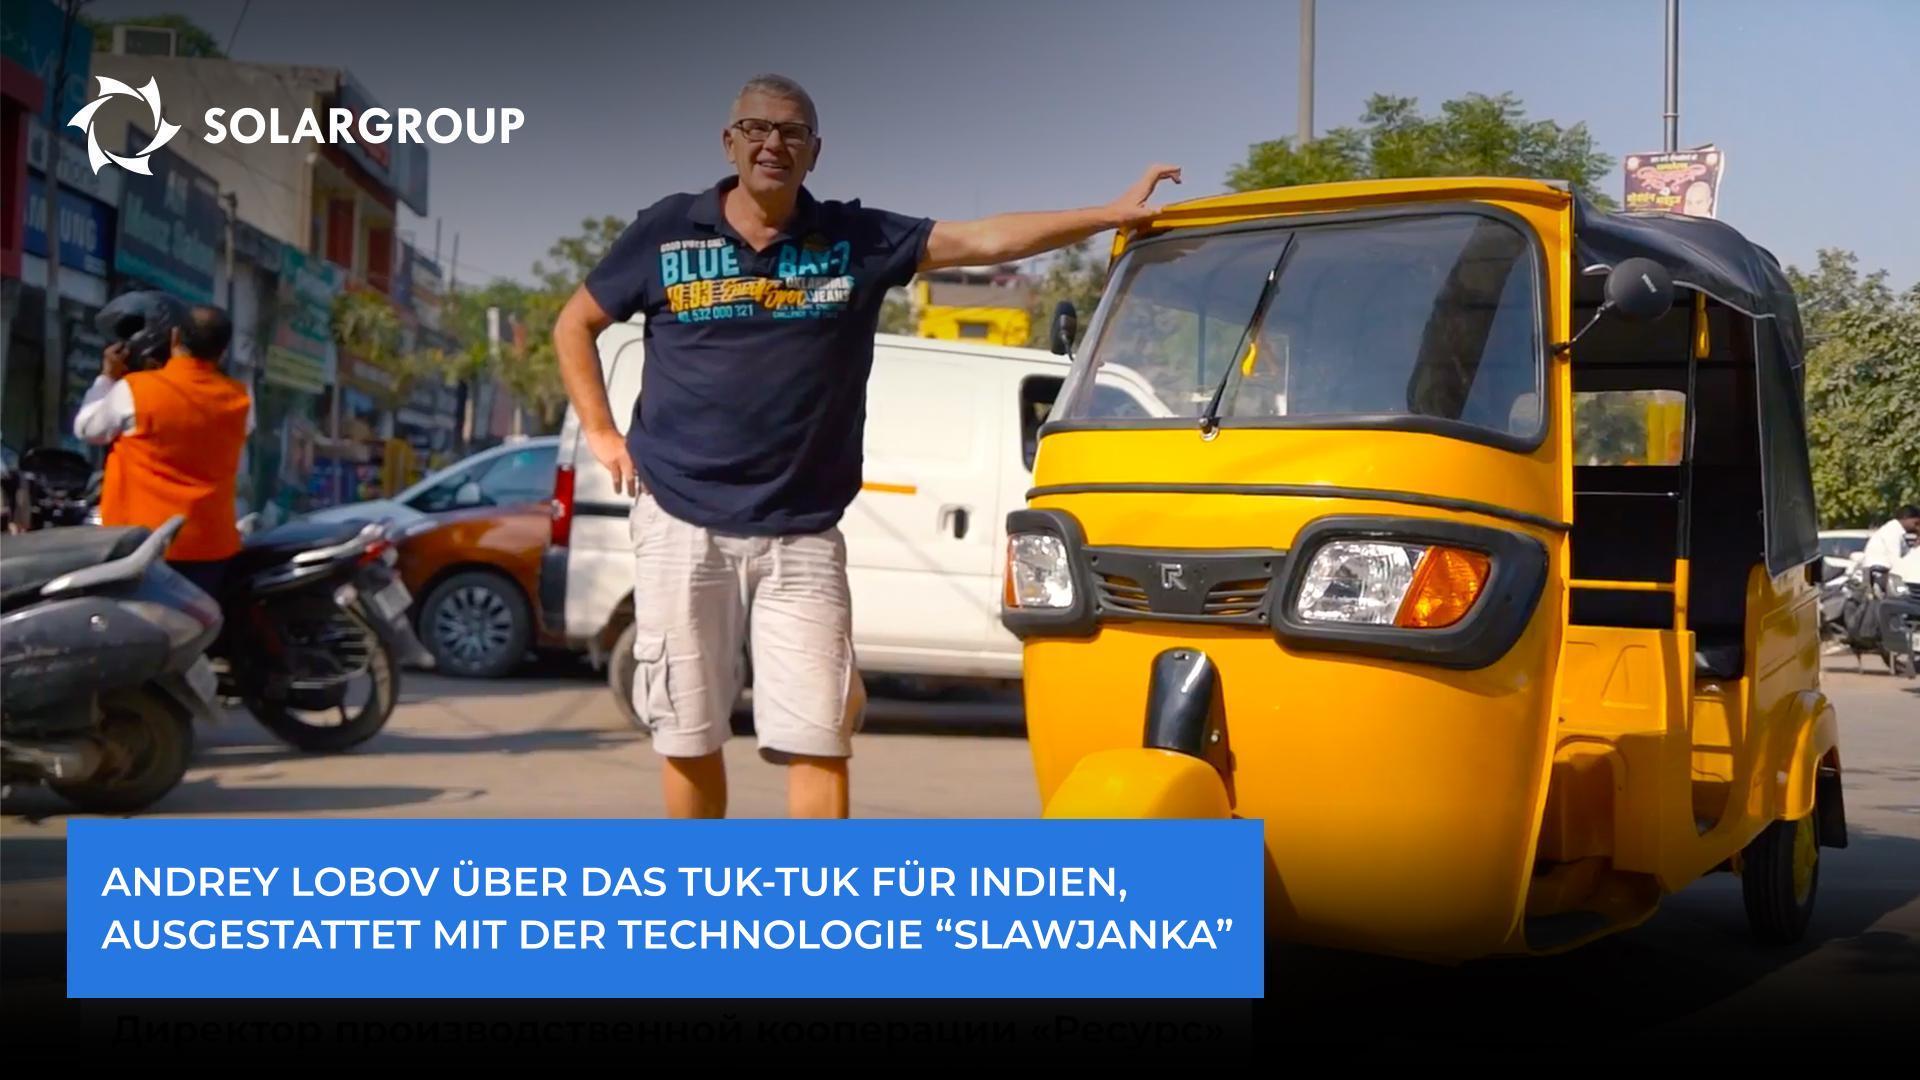 "Slawjanka"-Elektromotoren werden hier gefragt sein", Andrey Lobov über das Tuk-Tuk für Indien